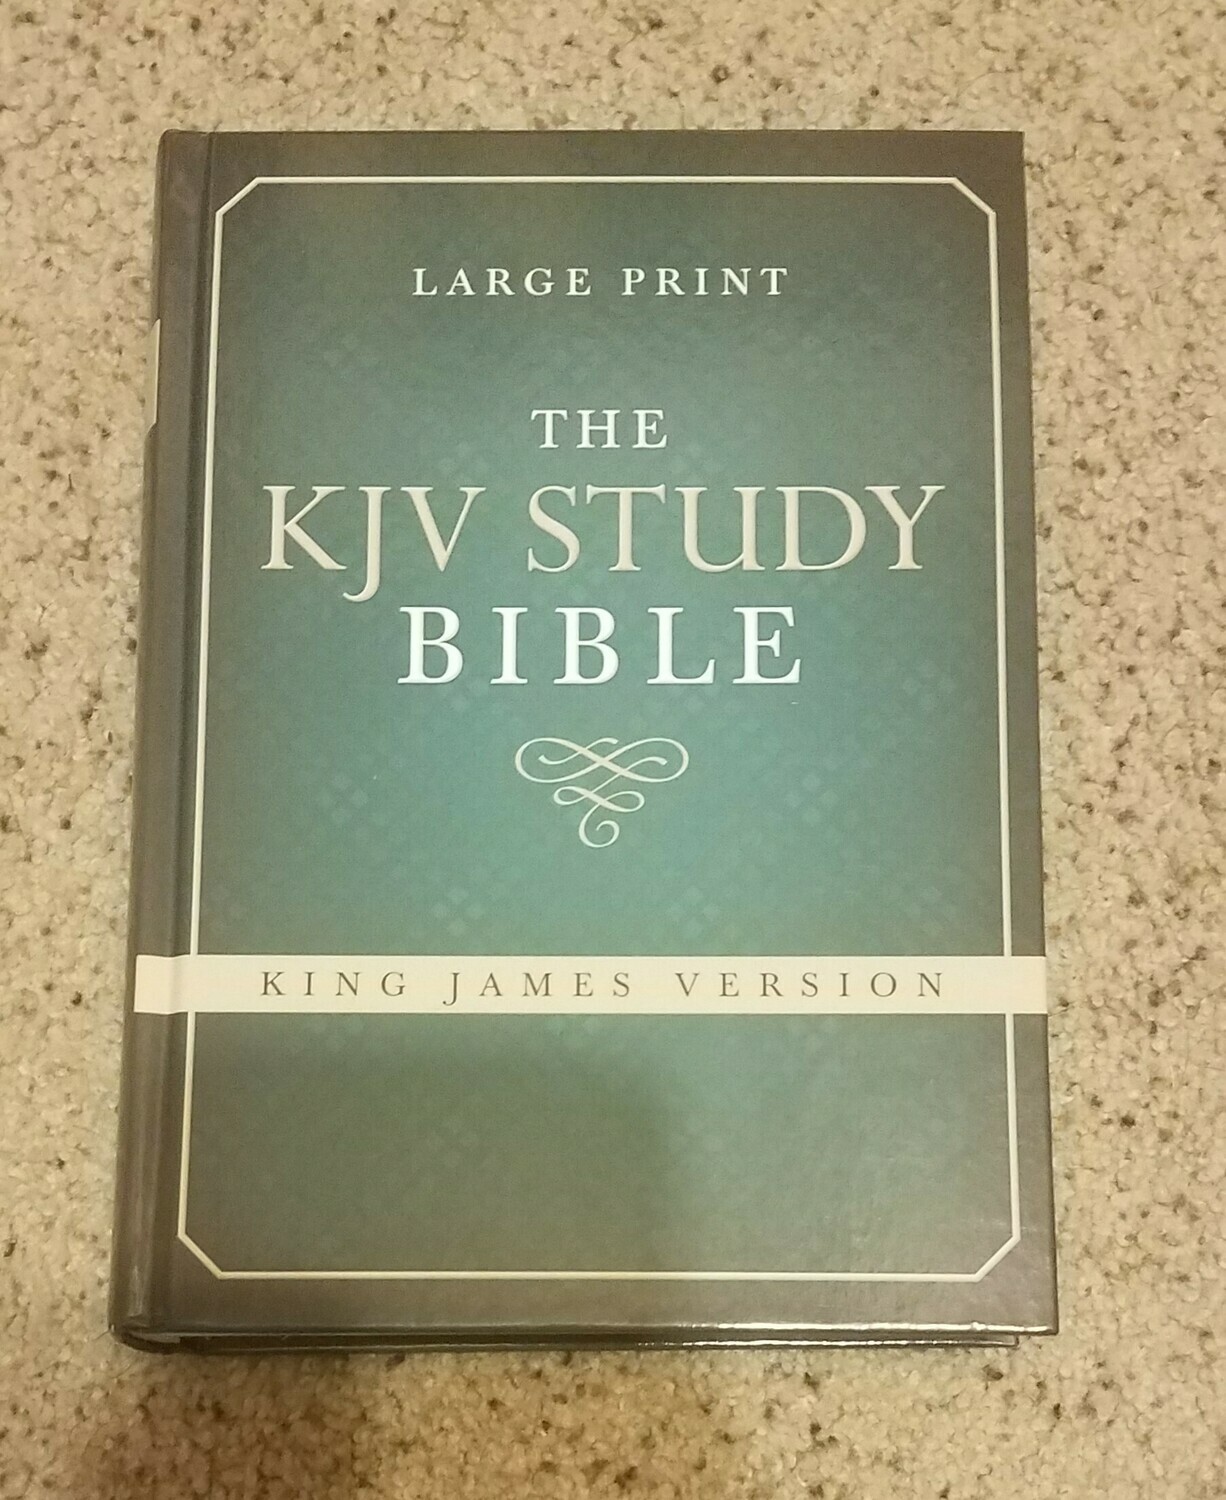 KJV Study Bible - Large Print Hardcover